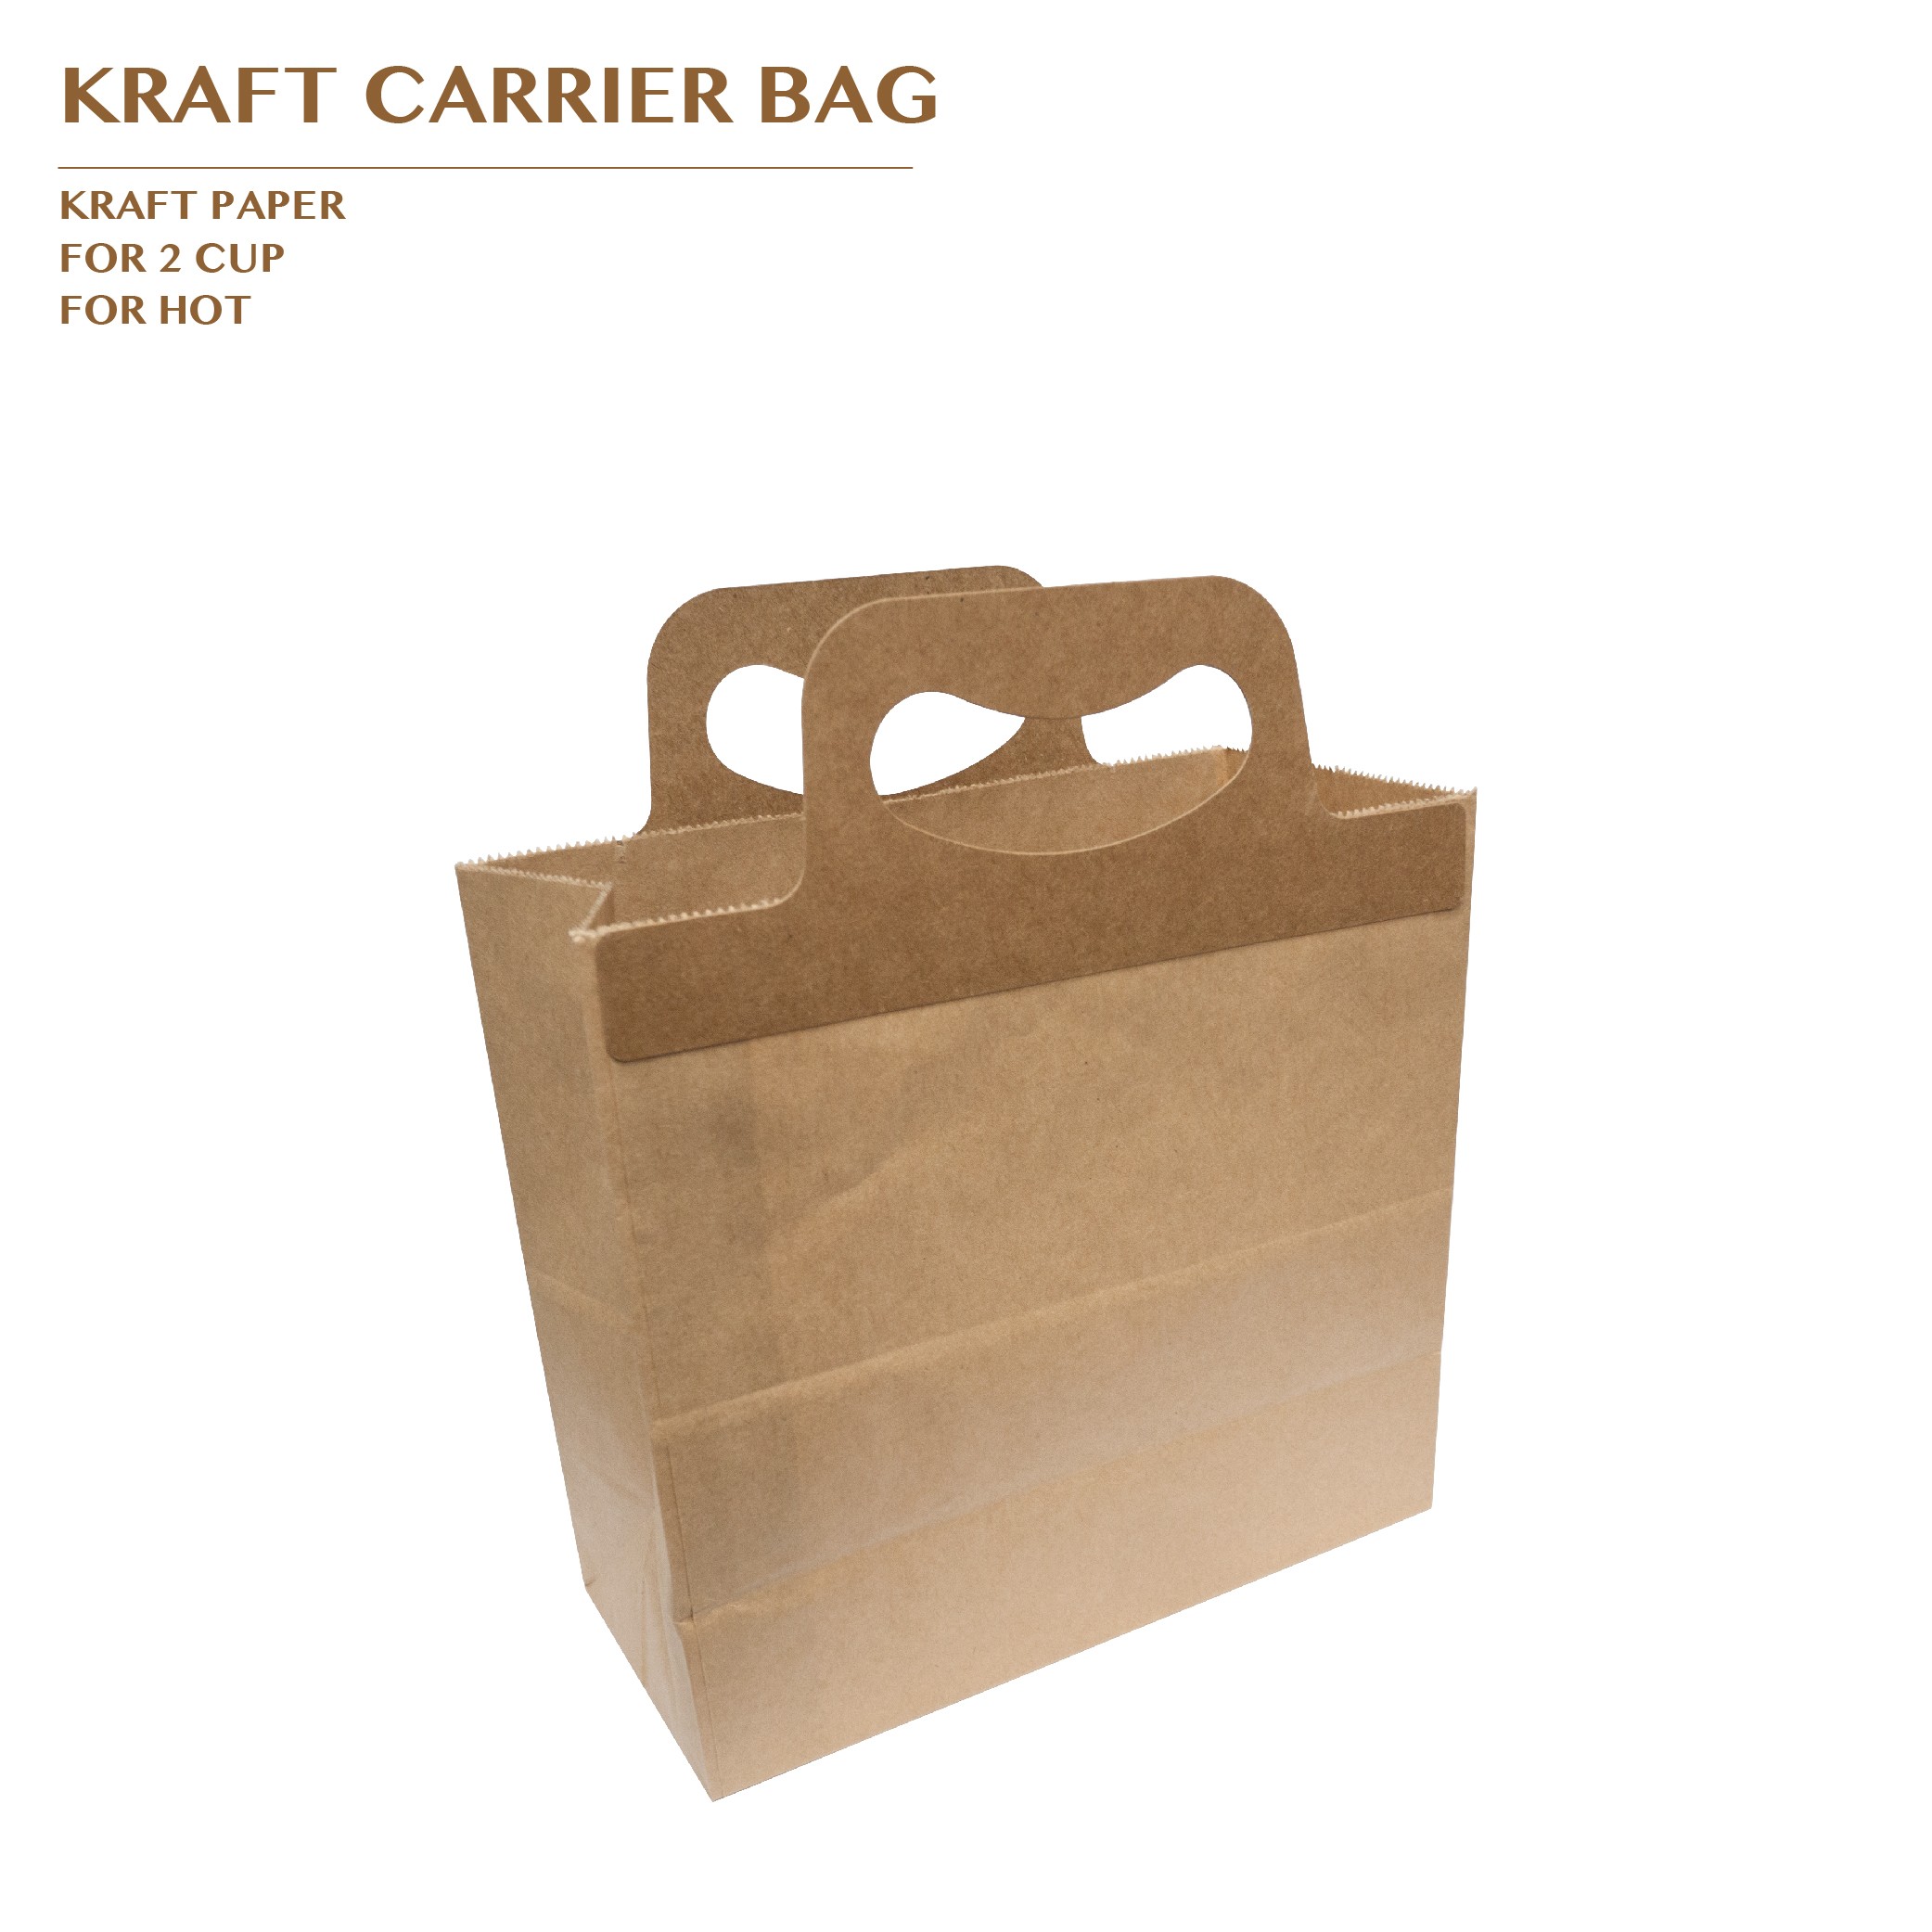 PRO-ORDER KRAFT CARRIER BAG FOR 2 CUP 500PCS/CTN